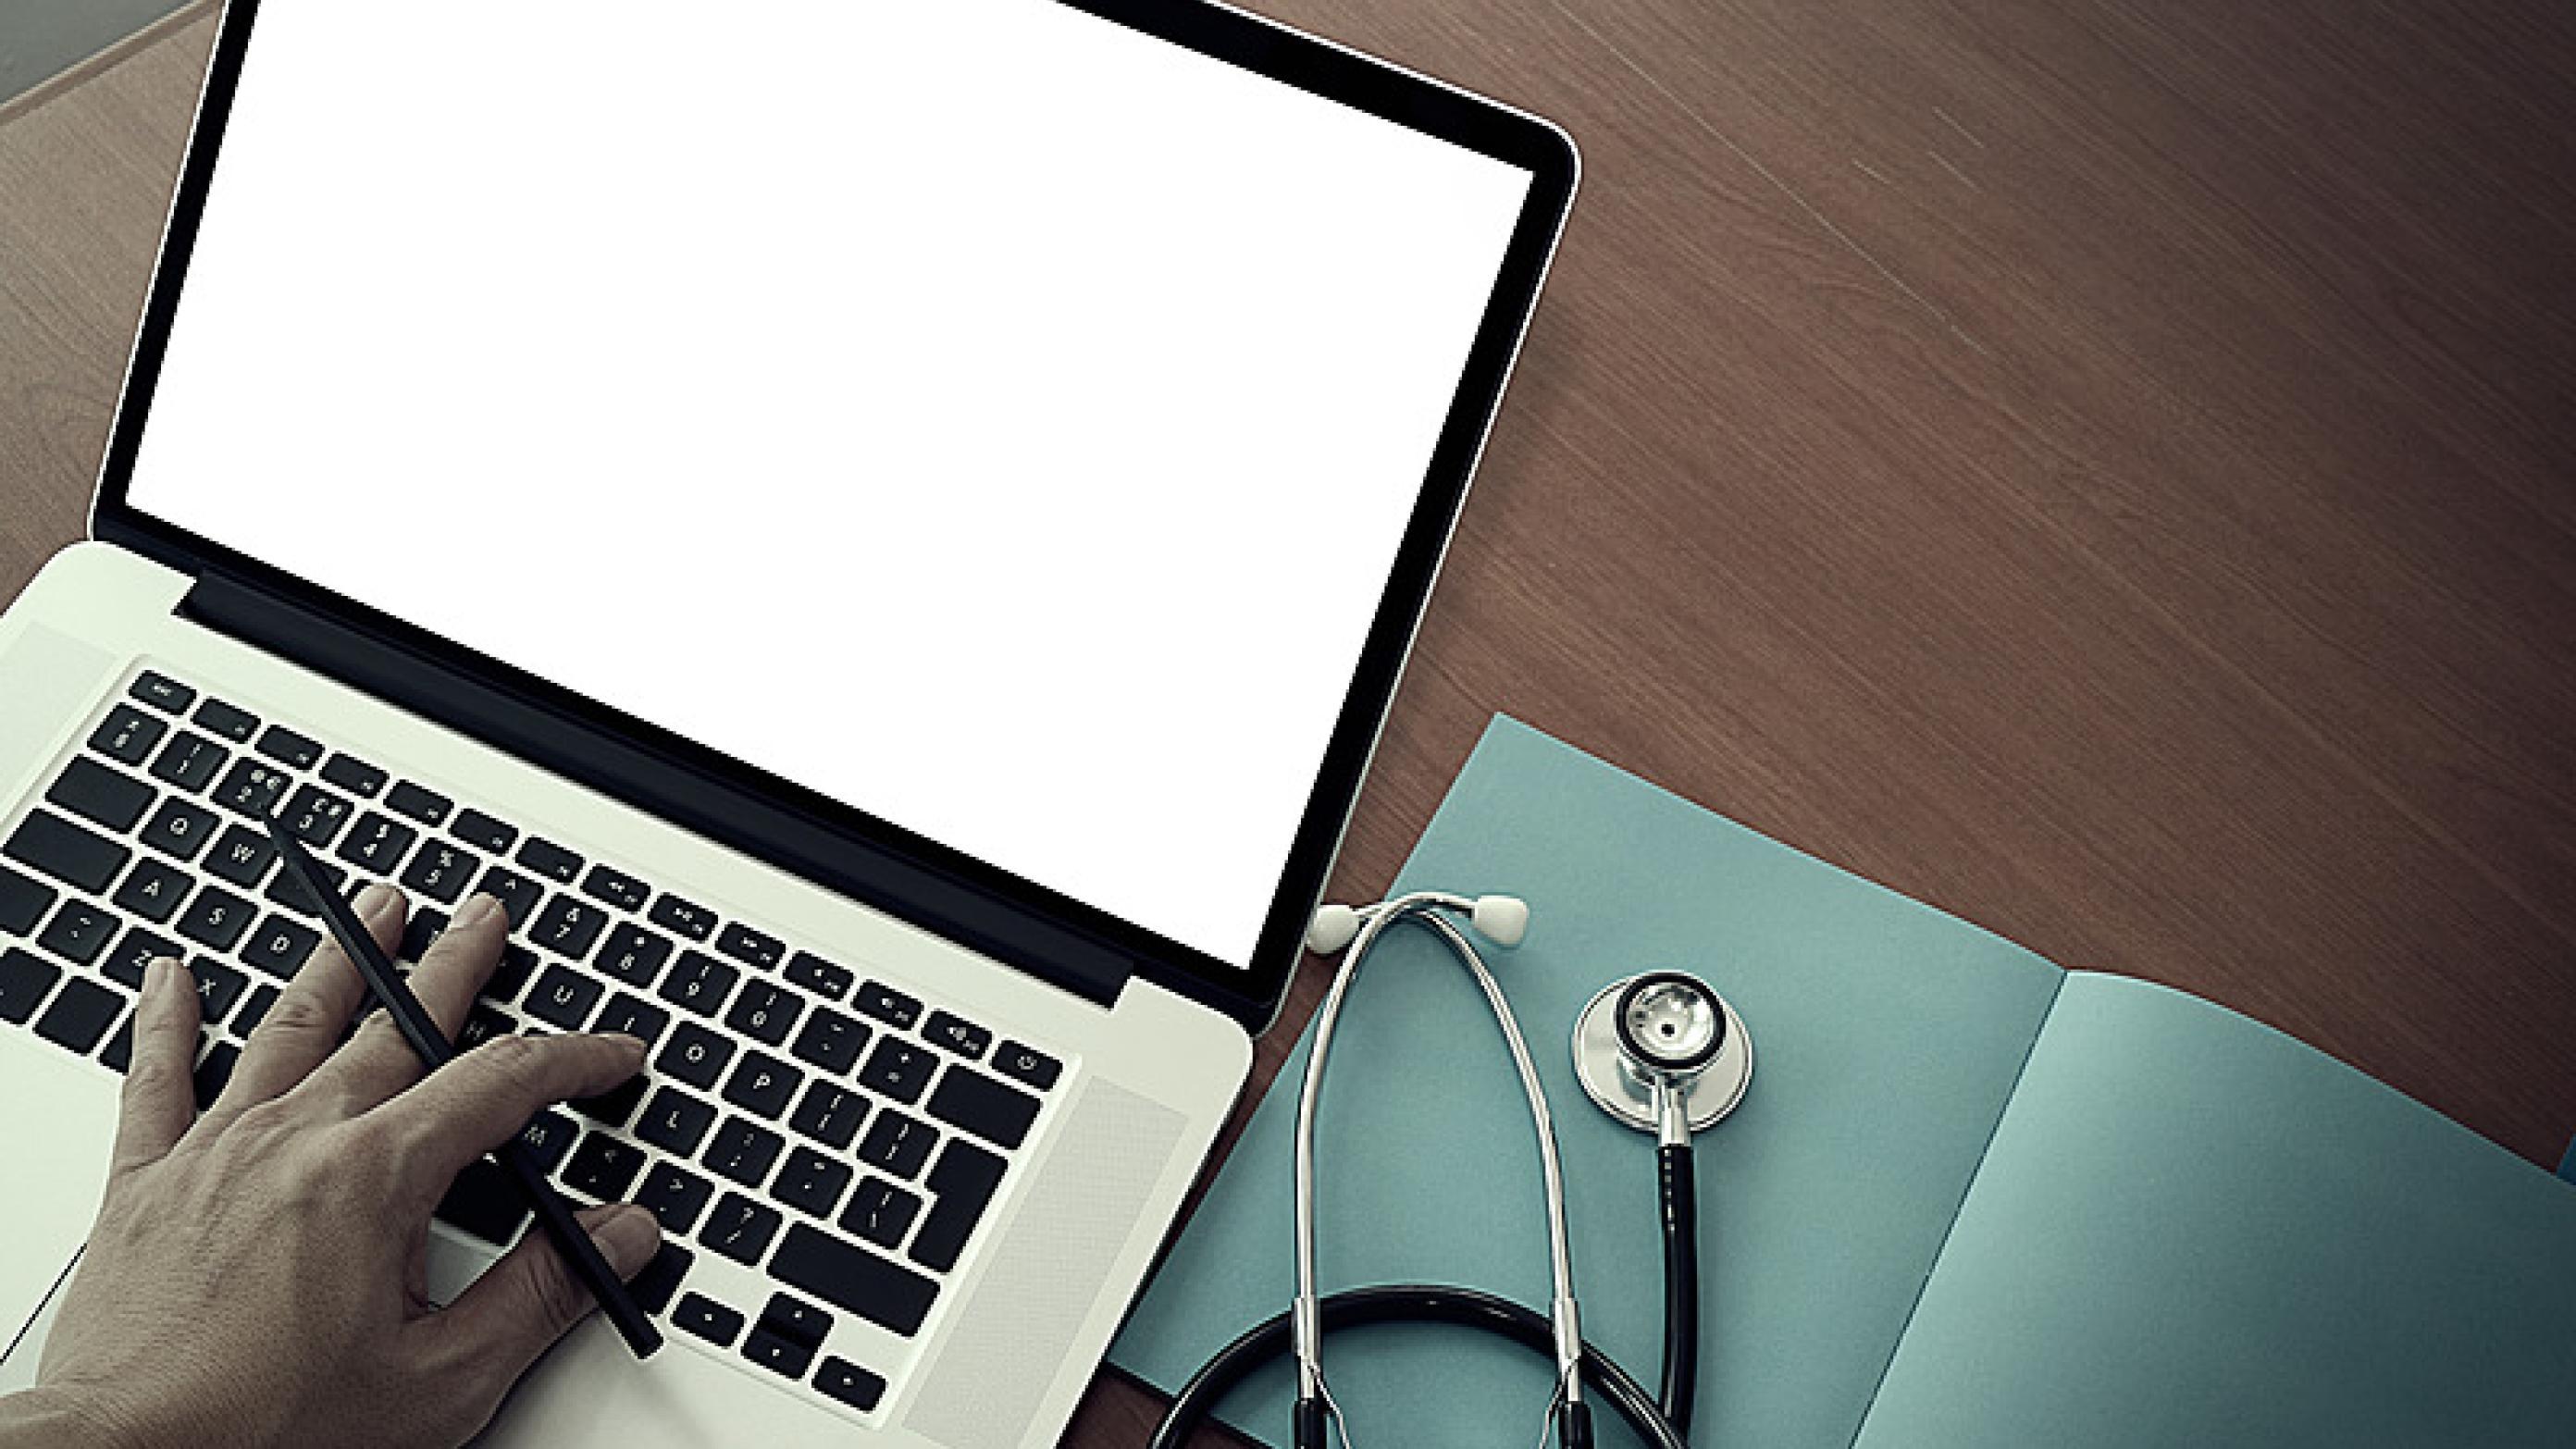 I Region Syddanmark kan læger se frem til at have adgang til et e-læringsforløb, der kan hjælpe dem med at blive bedre til at arbejde med tolke. 